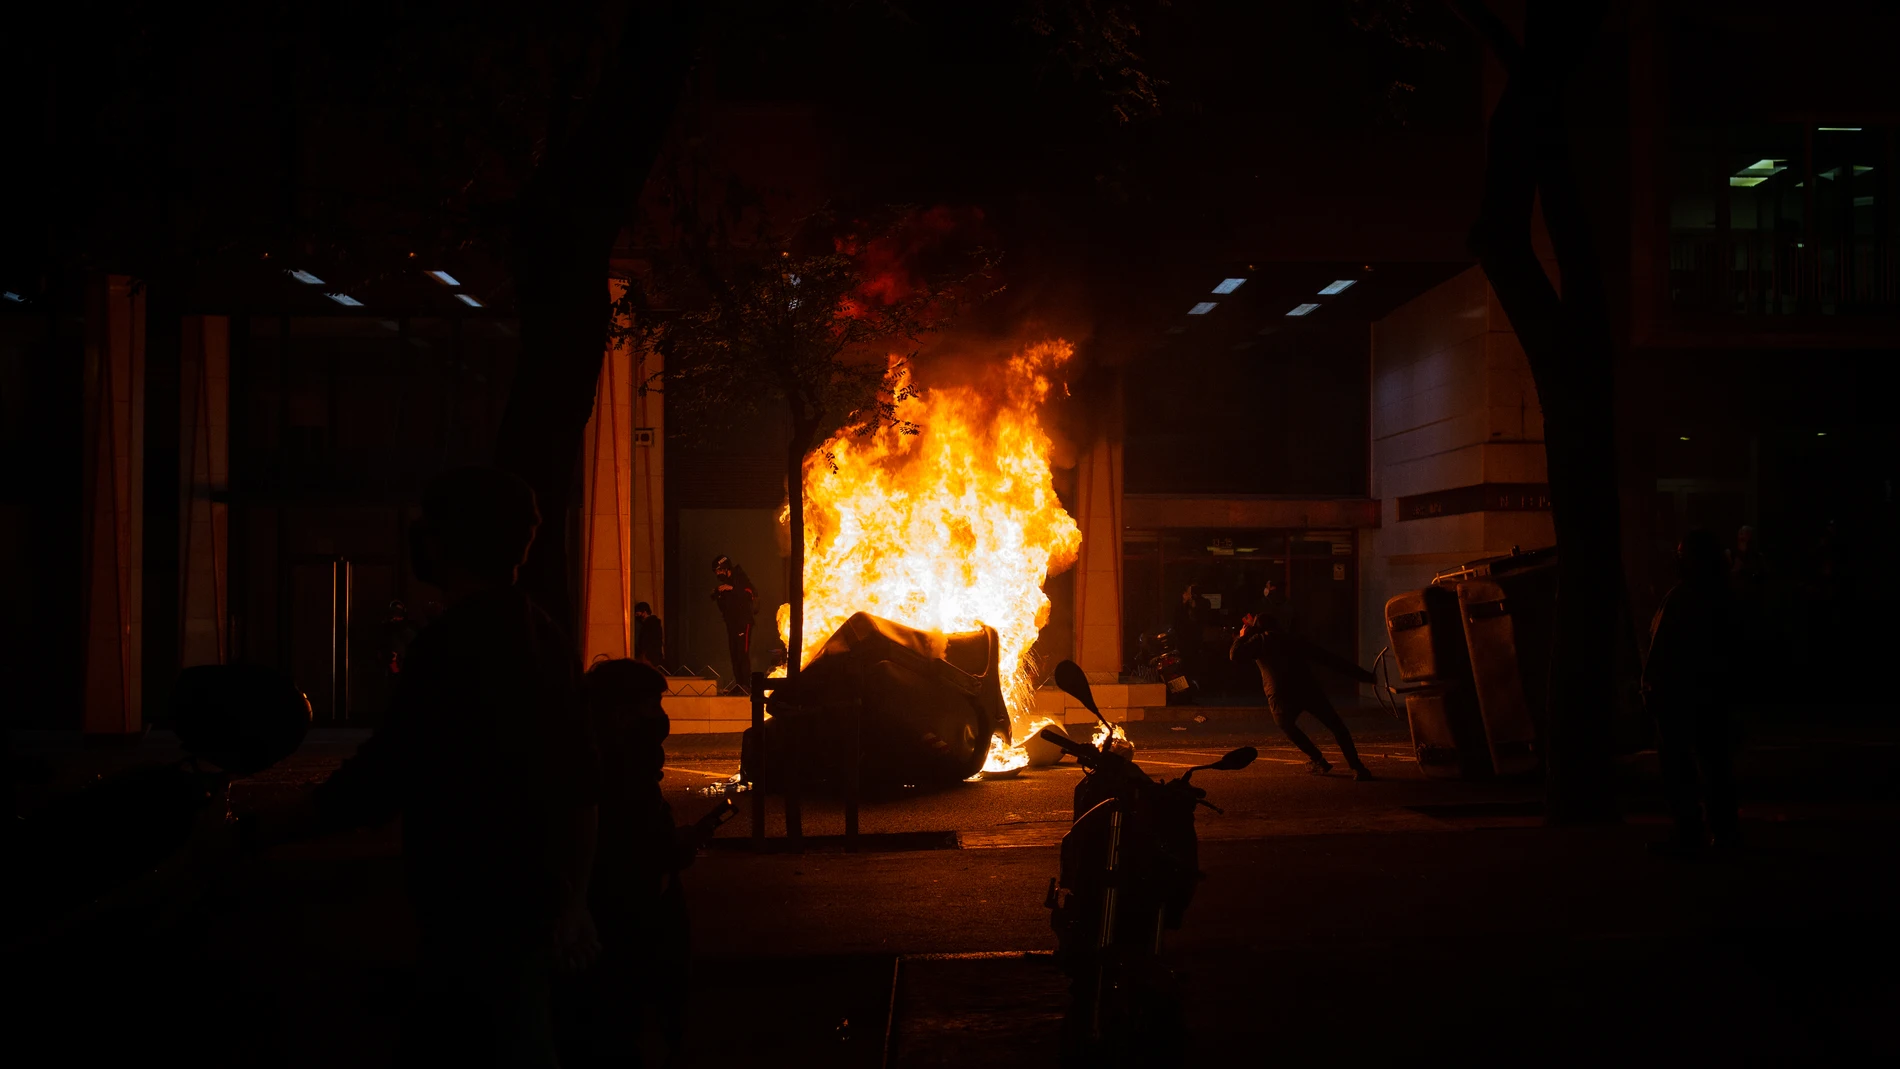 Un contenedor ardiendo tras la manifestación en apoyo a Pablo Hasel en Barcelona, Cataluña